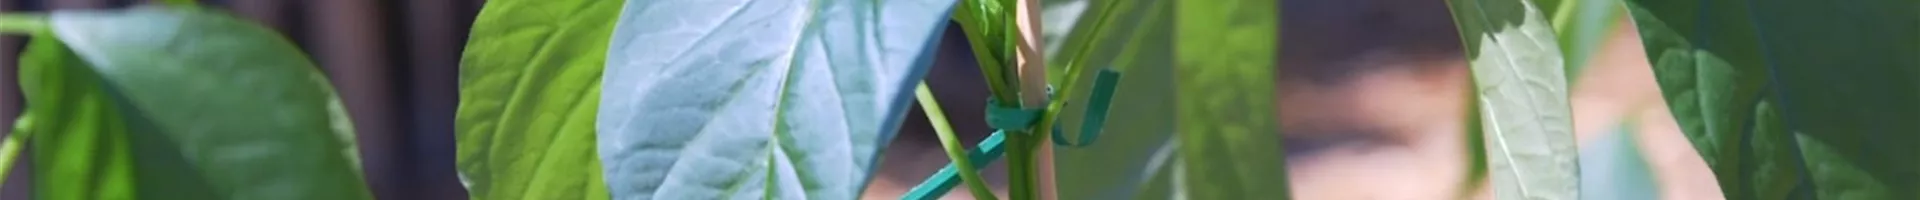 Jalapeno Paprika - Einpflanzen im Gemüsebeet (Thumbnail).jpg